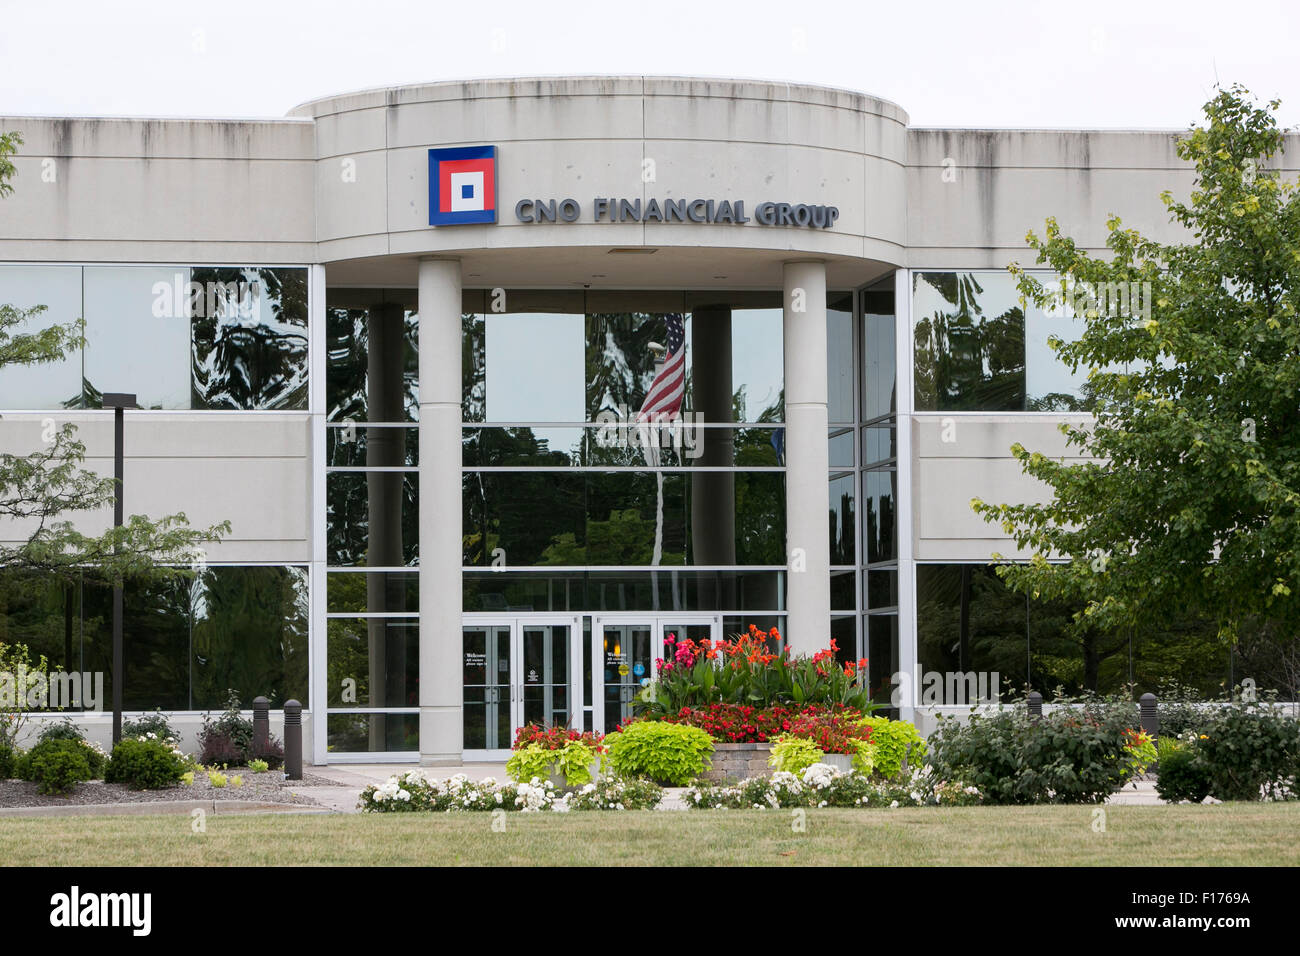 Un logo affiche à l'extérieur du siège de l'ordre Groupe financier, dans la région de Carmel, Indiana le 15 août 2015. Banque D'Images